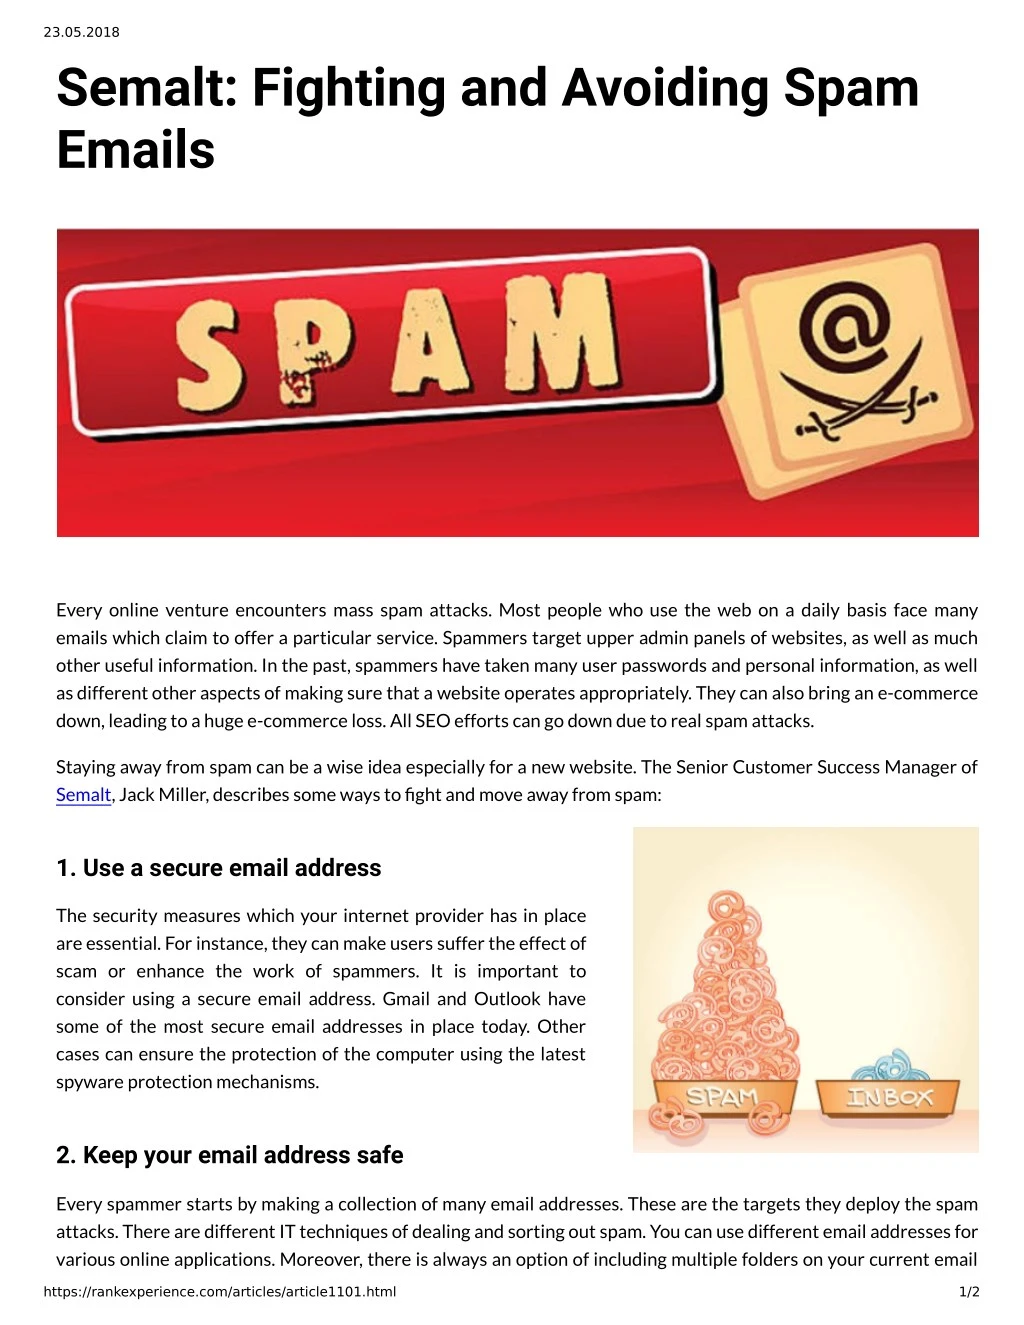 23 05 2018 semalt fighting and avoiding spam